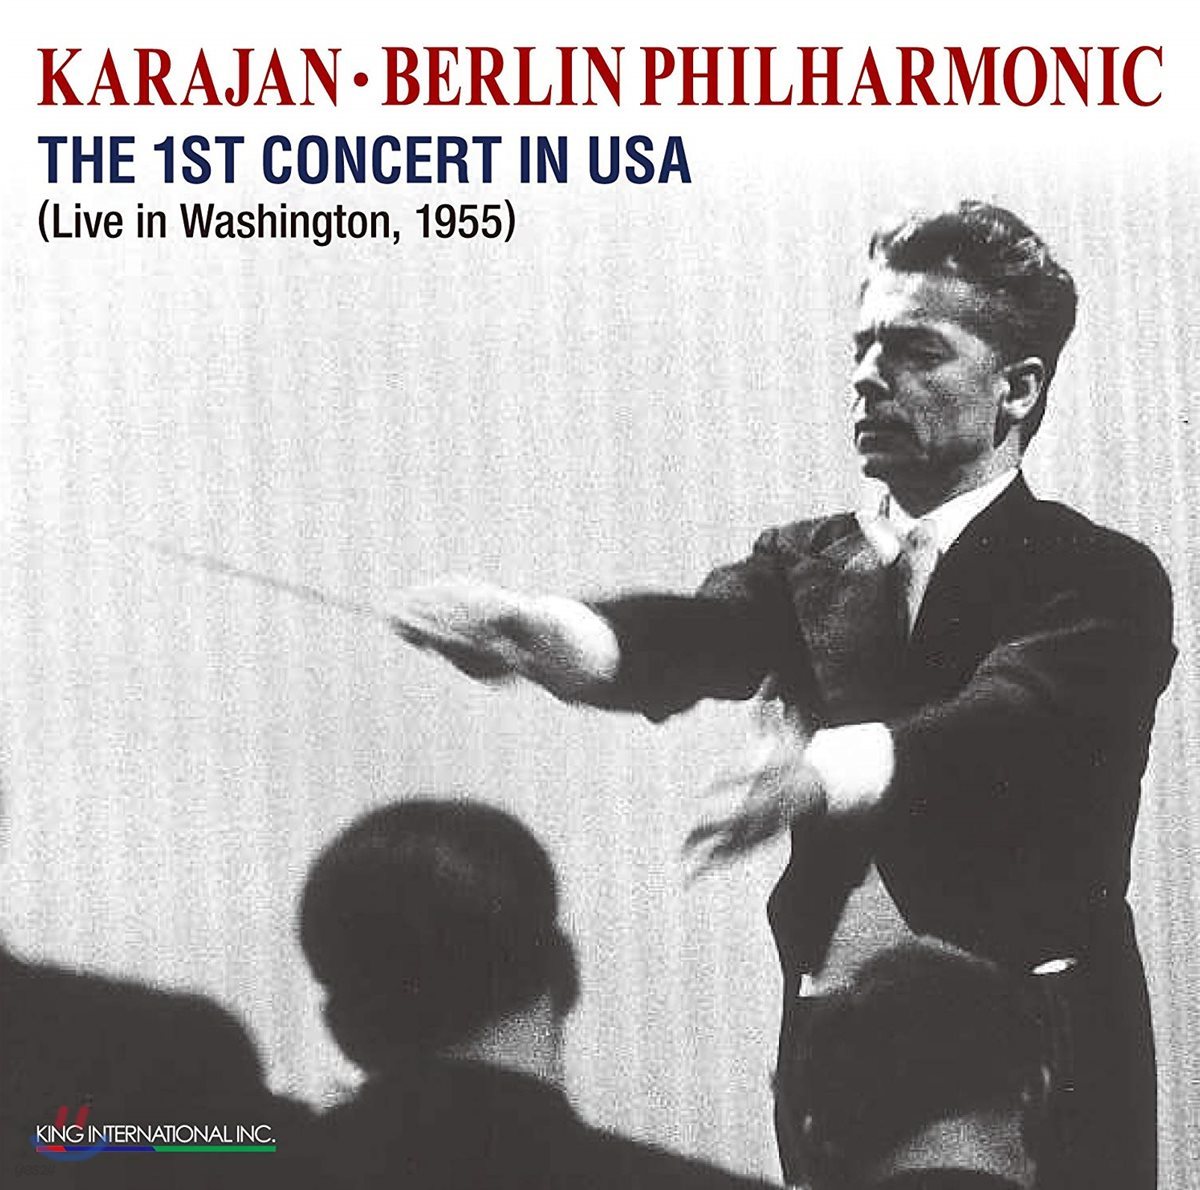 카라얀 / 베를린 필하모닉 1955년 워싱턴 라이브 콘서트 실황 (Herbert von Karajan &amp; Berlin Philharmonic - The 1st Concert in USA)